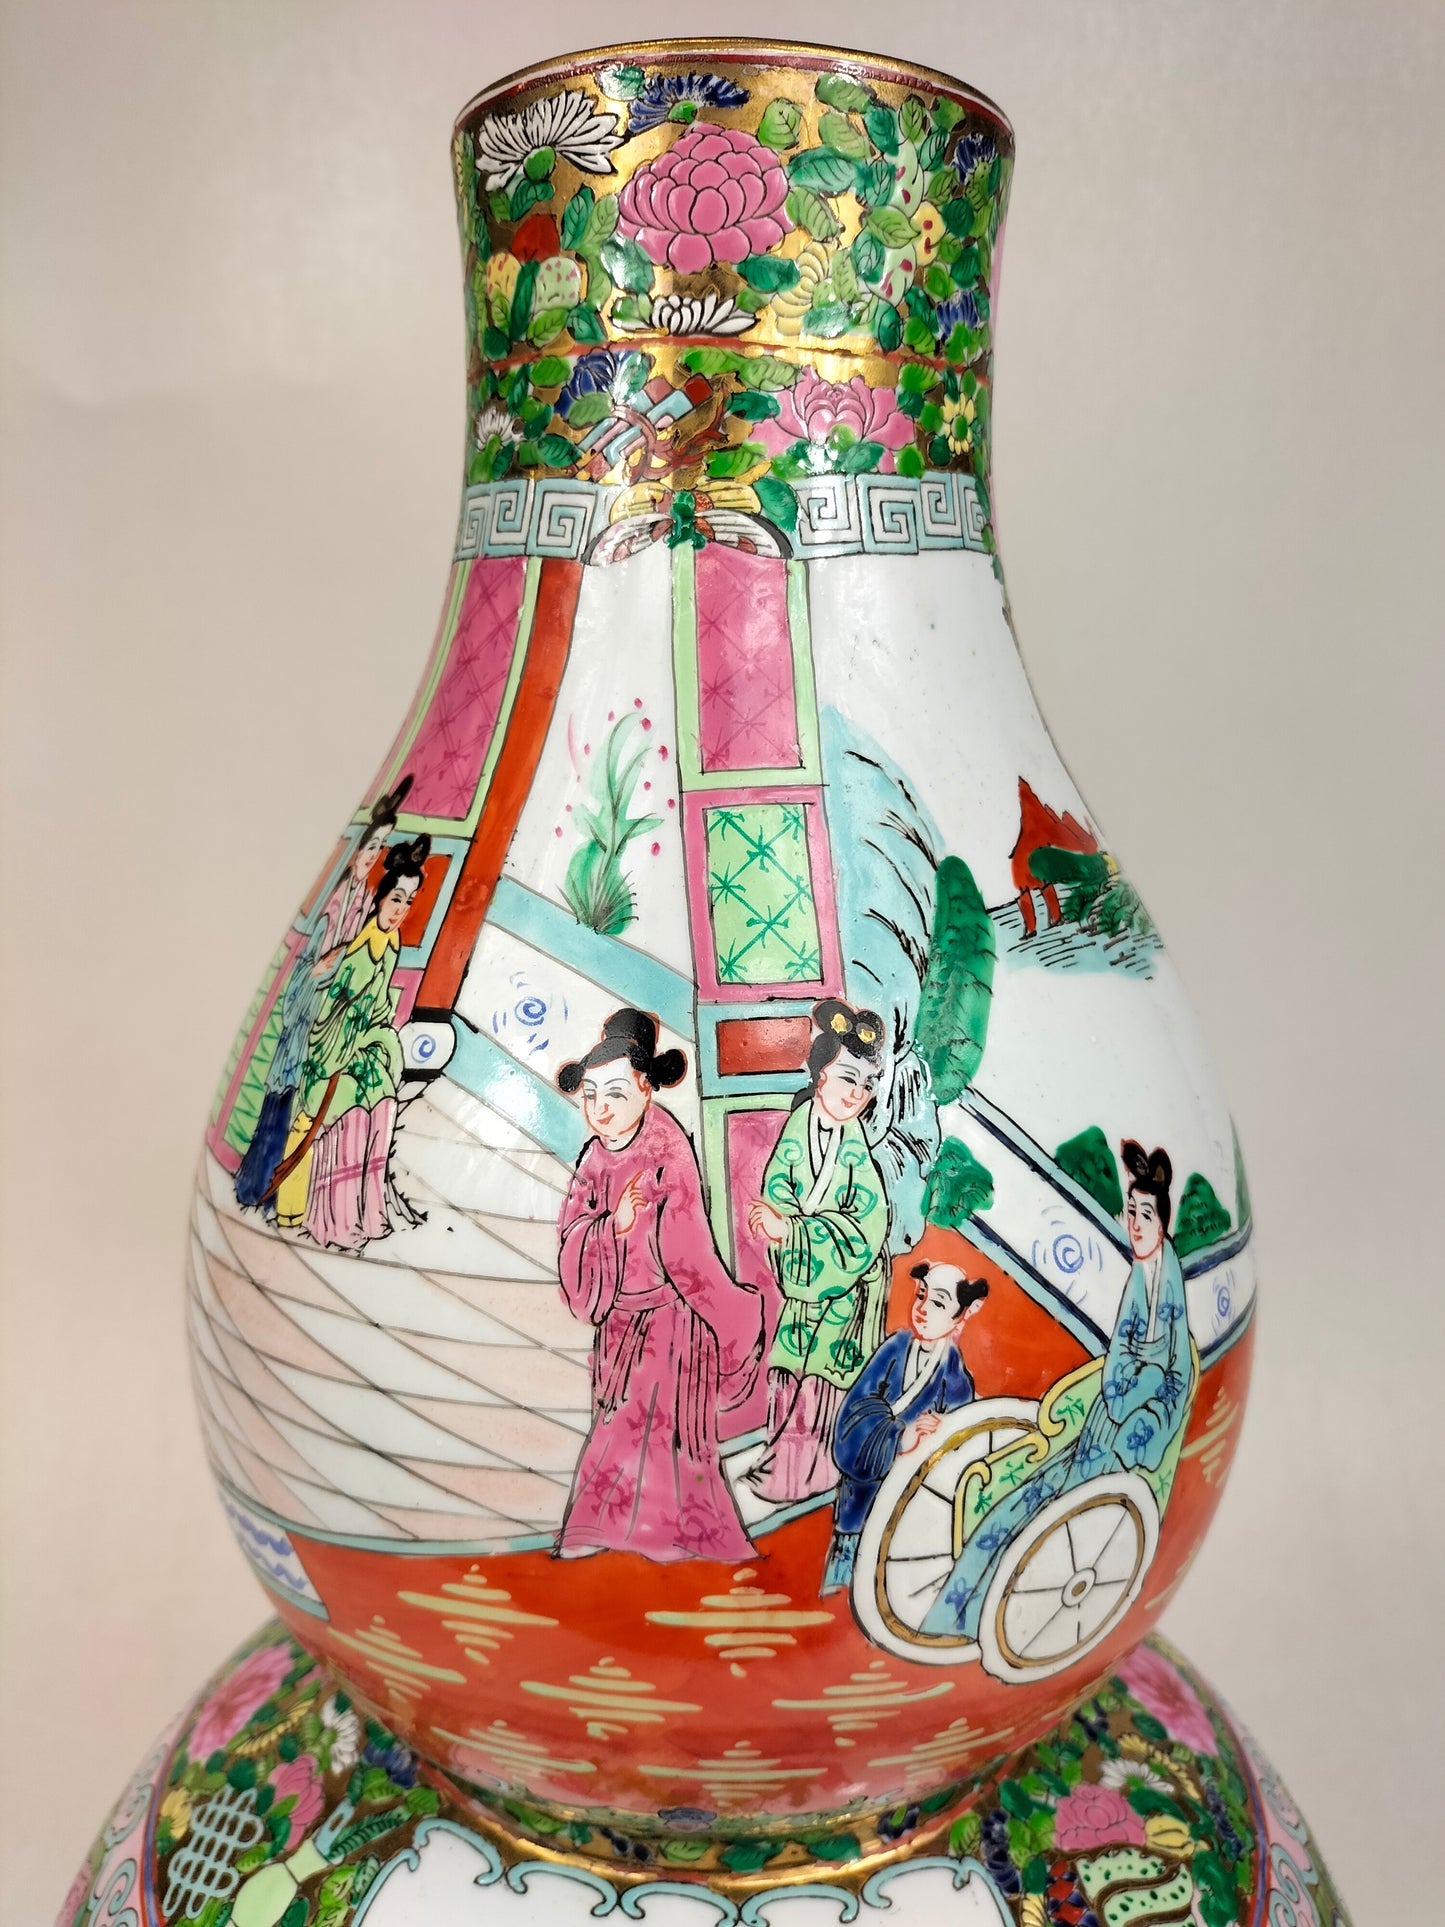 大型 XL 中国广州玫瑰花章双葫芦花瓶 // 20 世纪中期